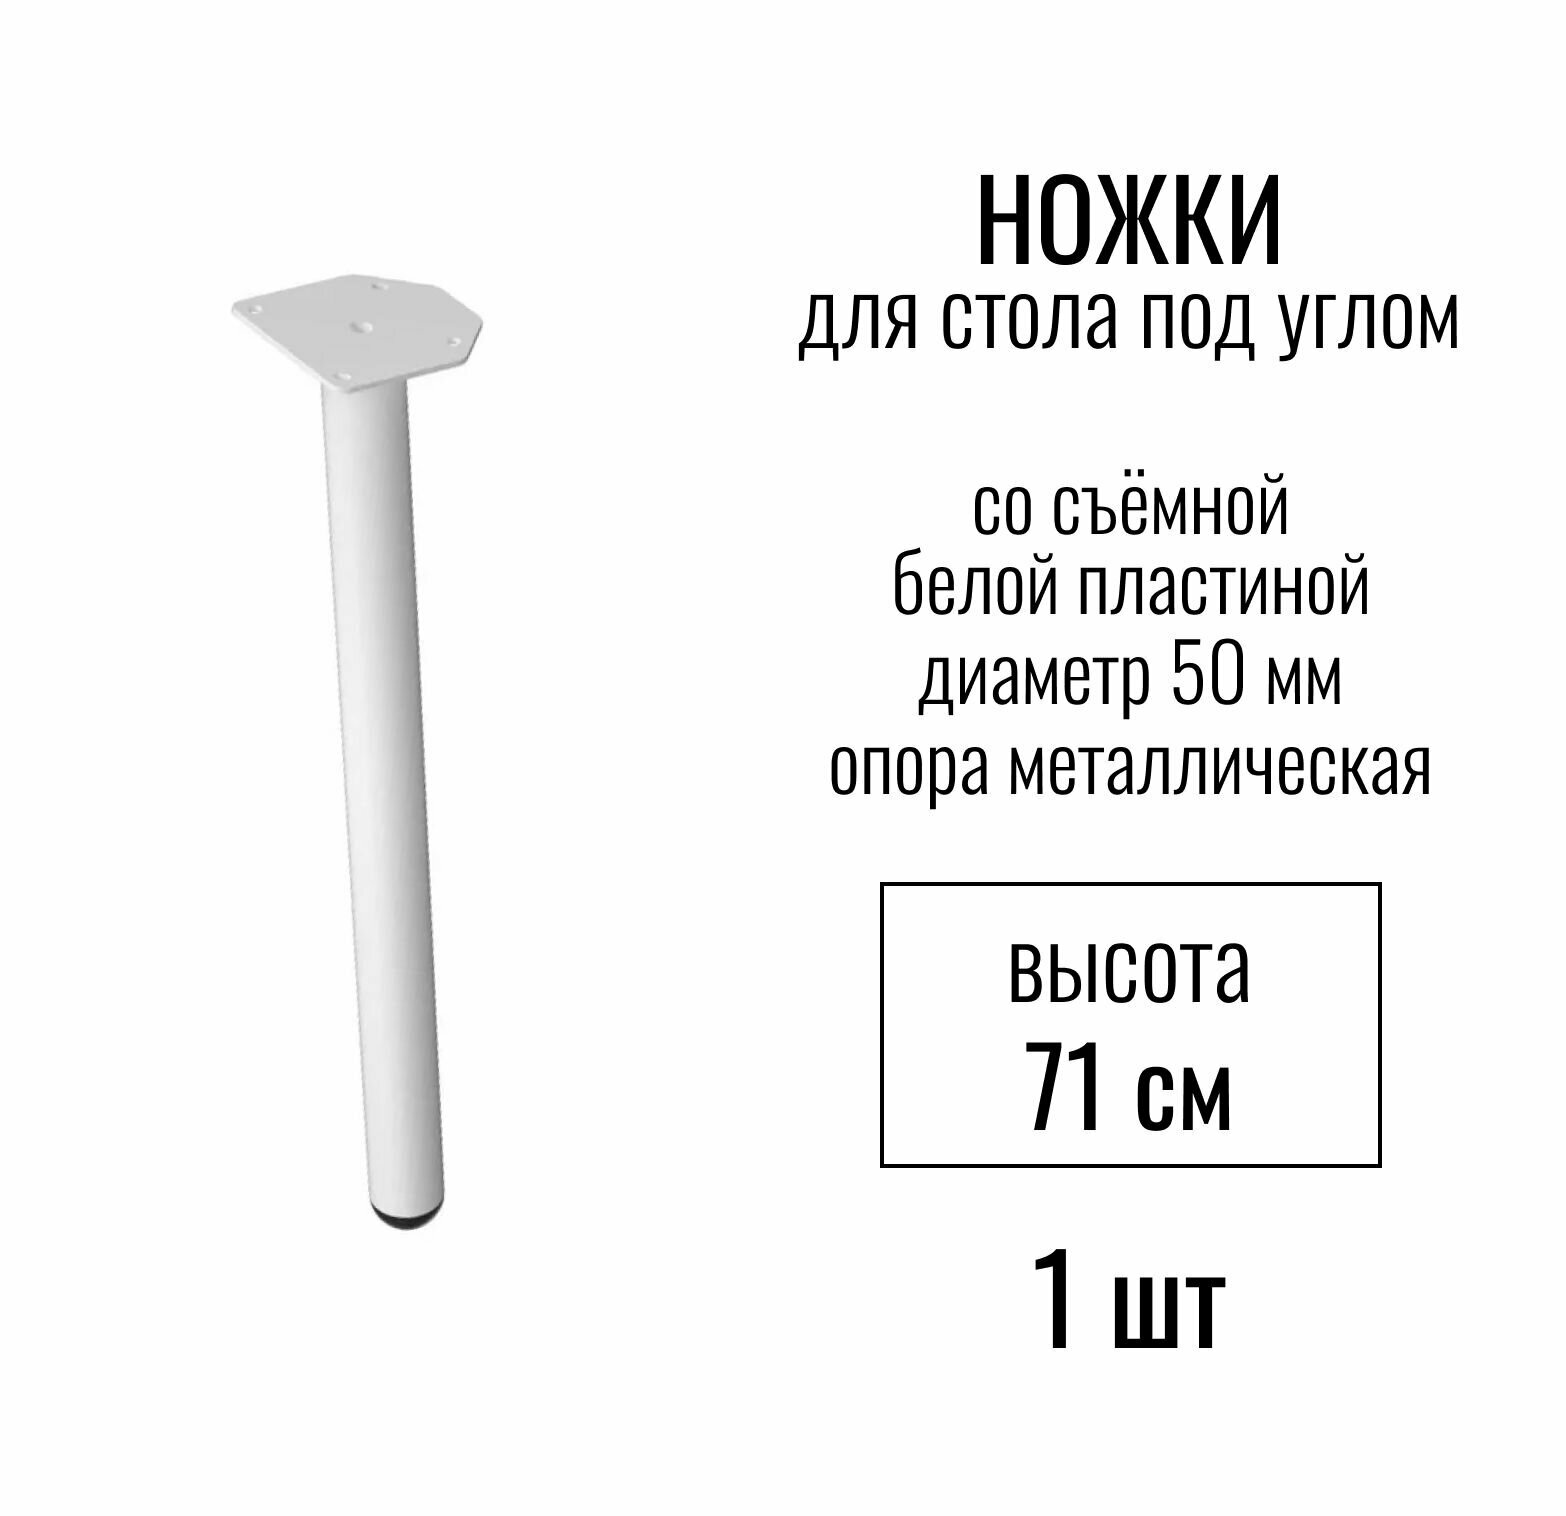 Ножки для стола под углом высота 710 мм (D 50 мм) со съемной белой пластиной / опора мебельная металлическая для столешницы цвет белый 1 шт